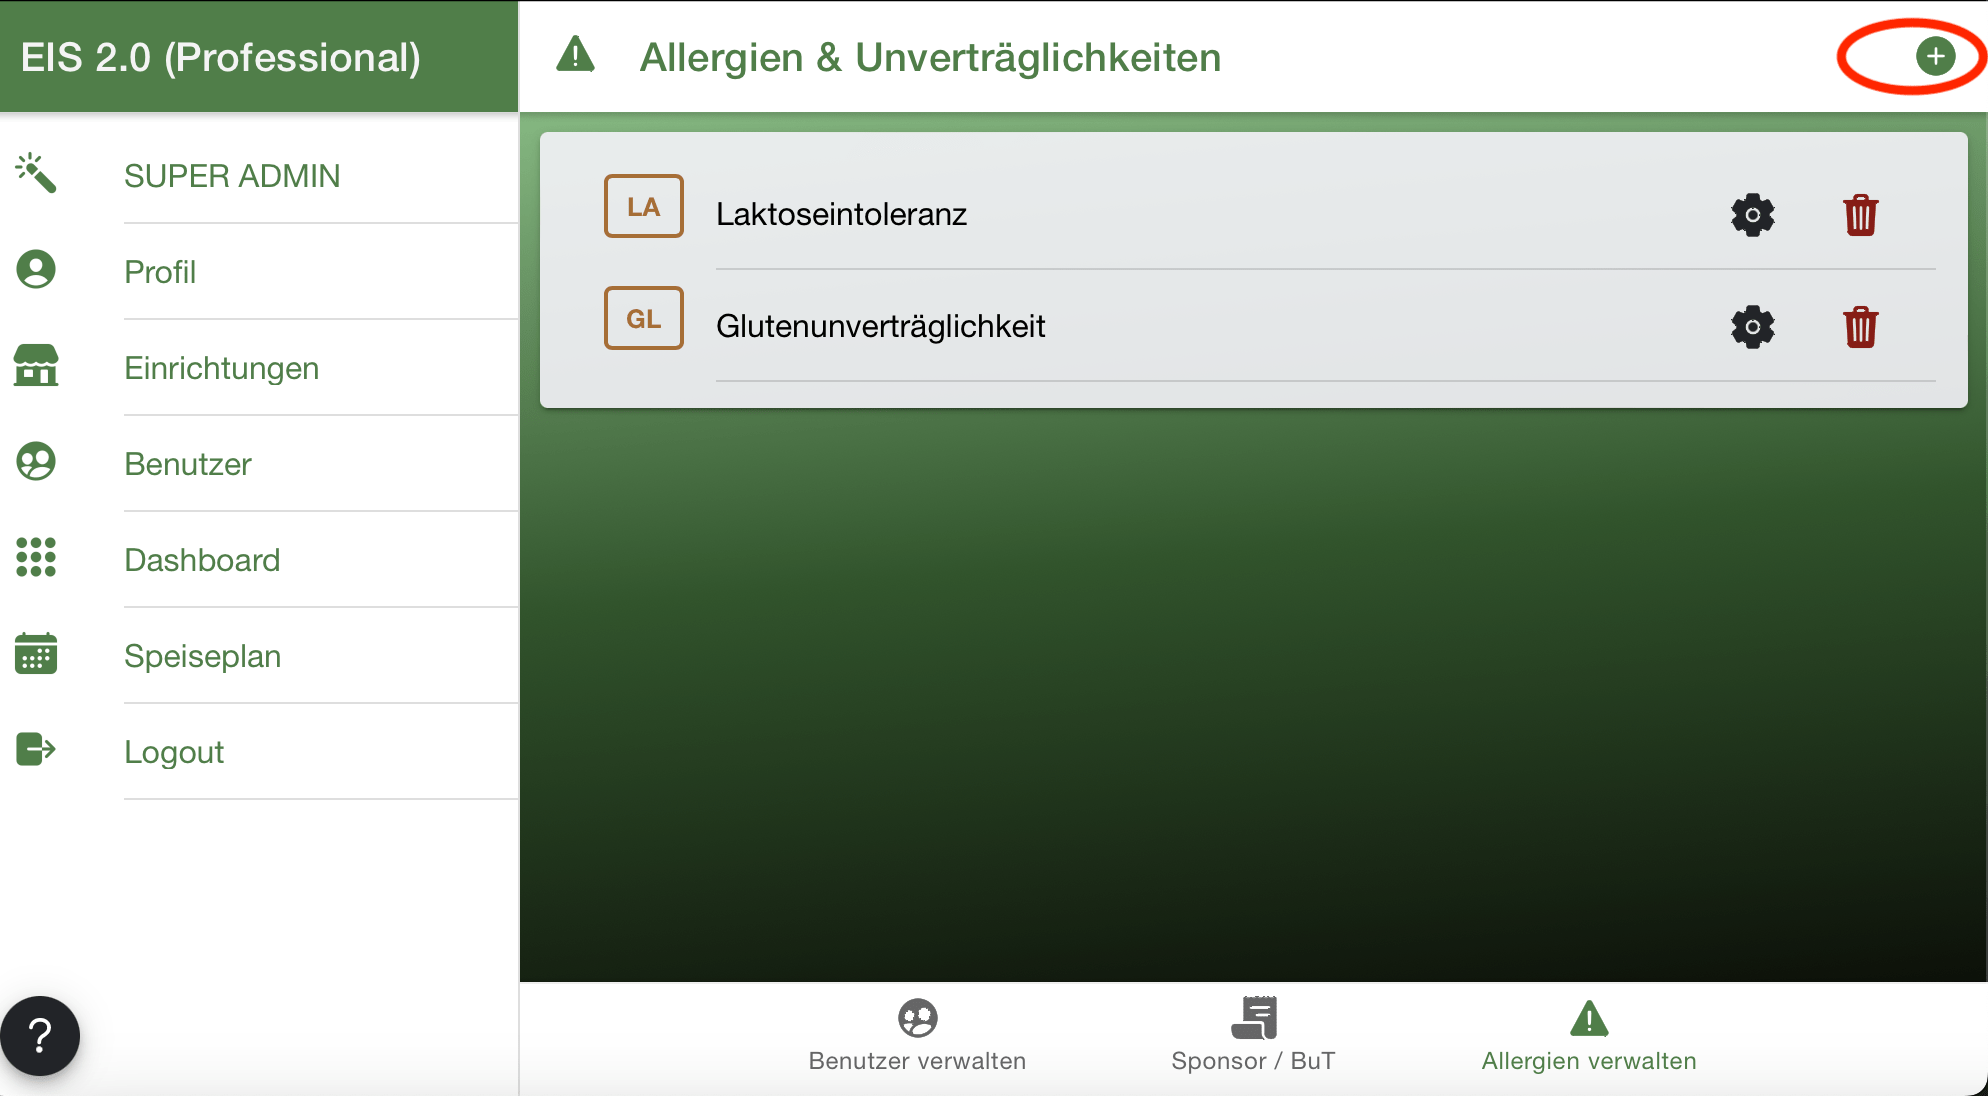 Plus Allergie hinzufügen - EIS 2.0 Online-Bestellsystem